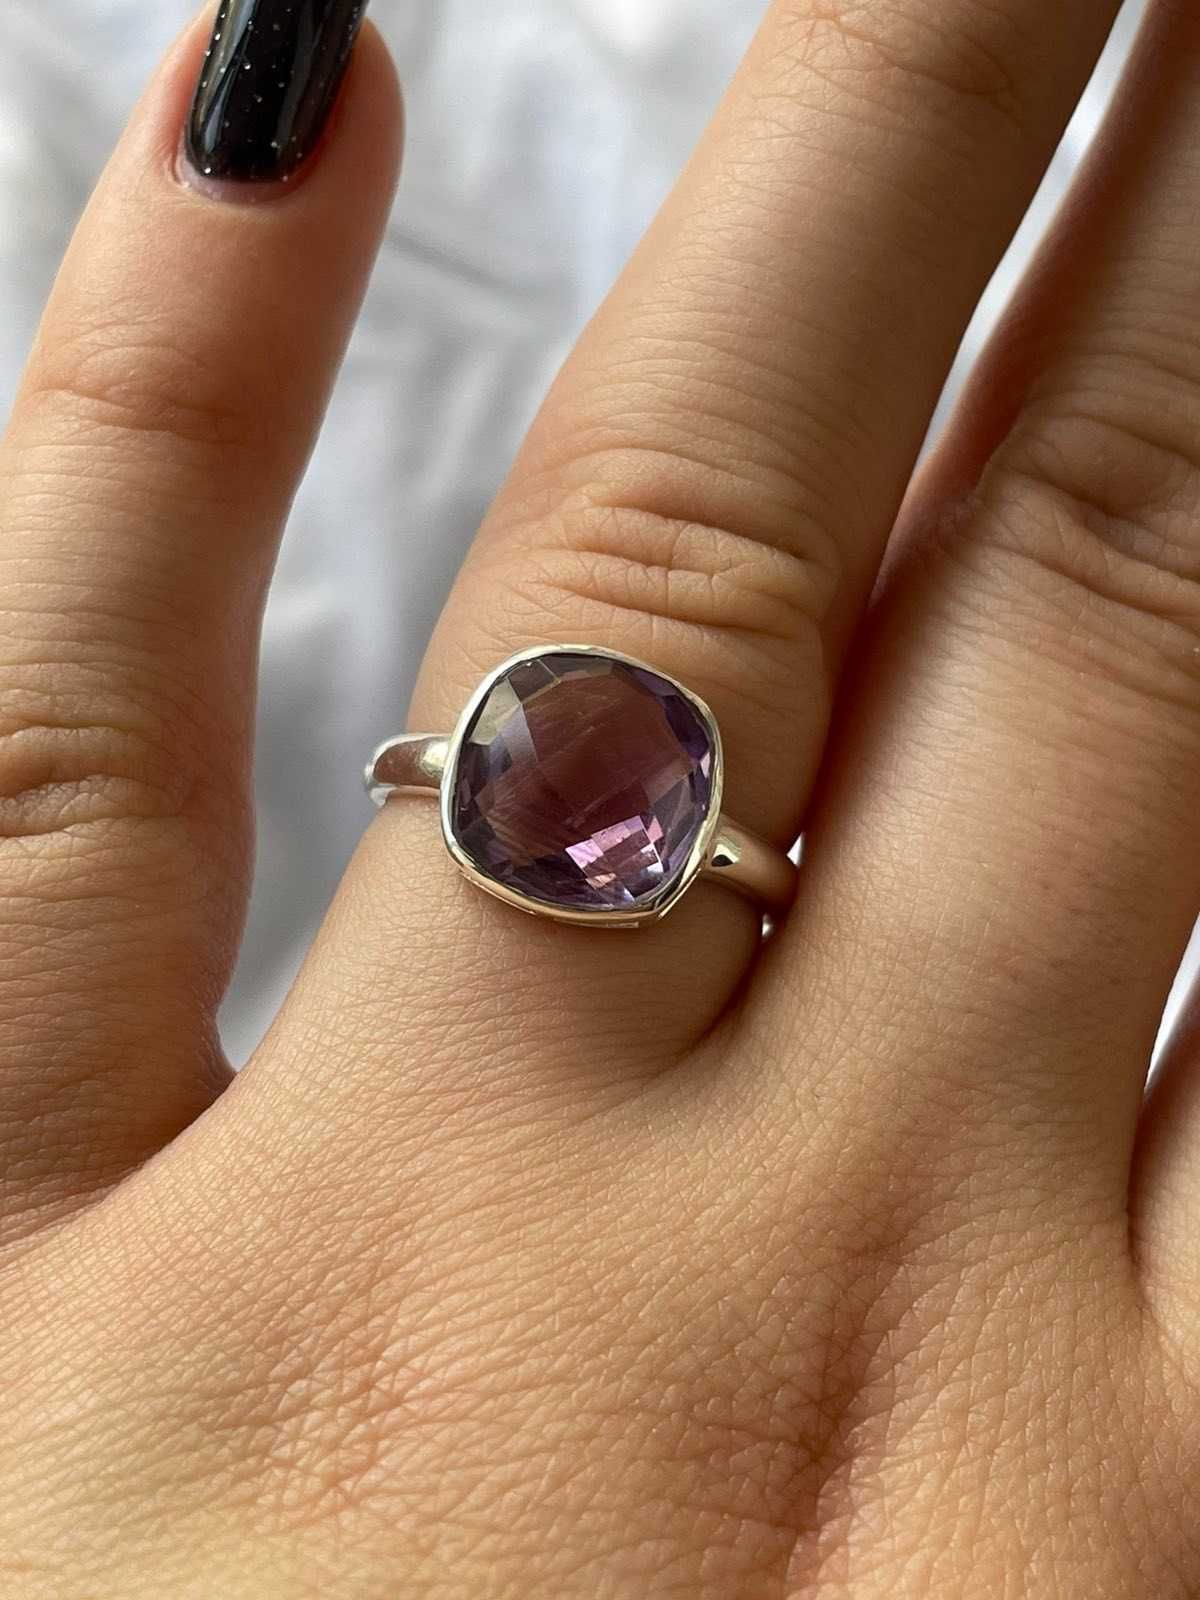 Серебряное кольцо 925 пробы с пурпурным аметистом. Размер 17.